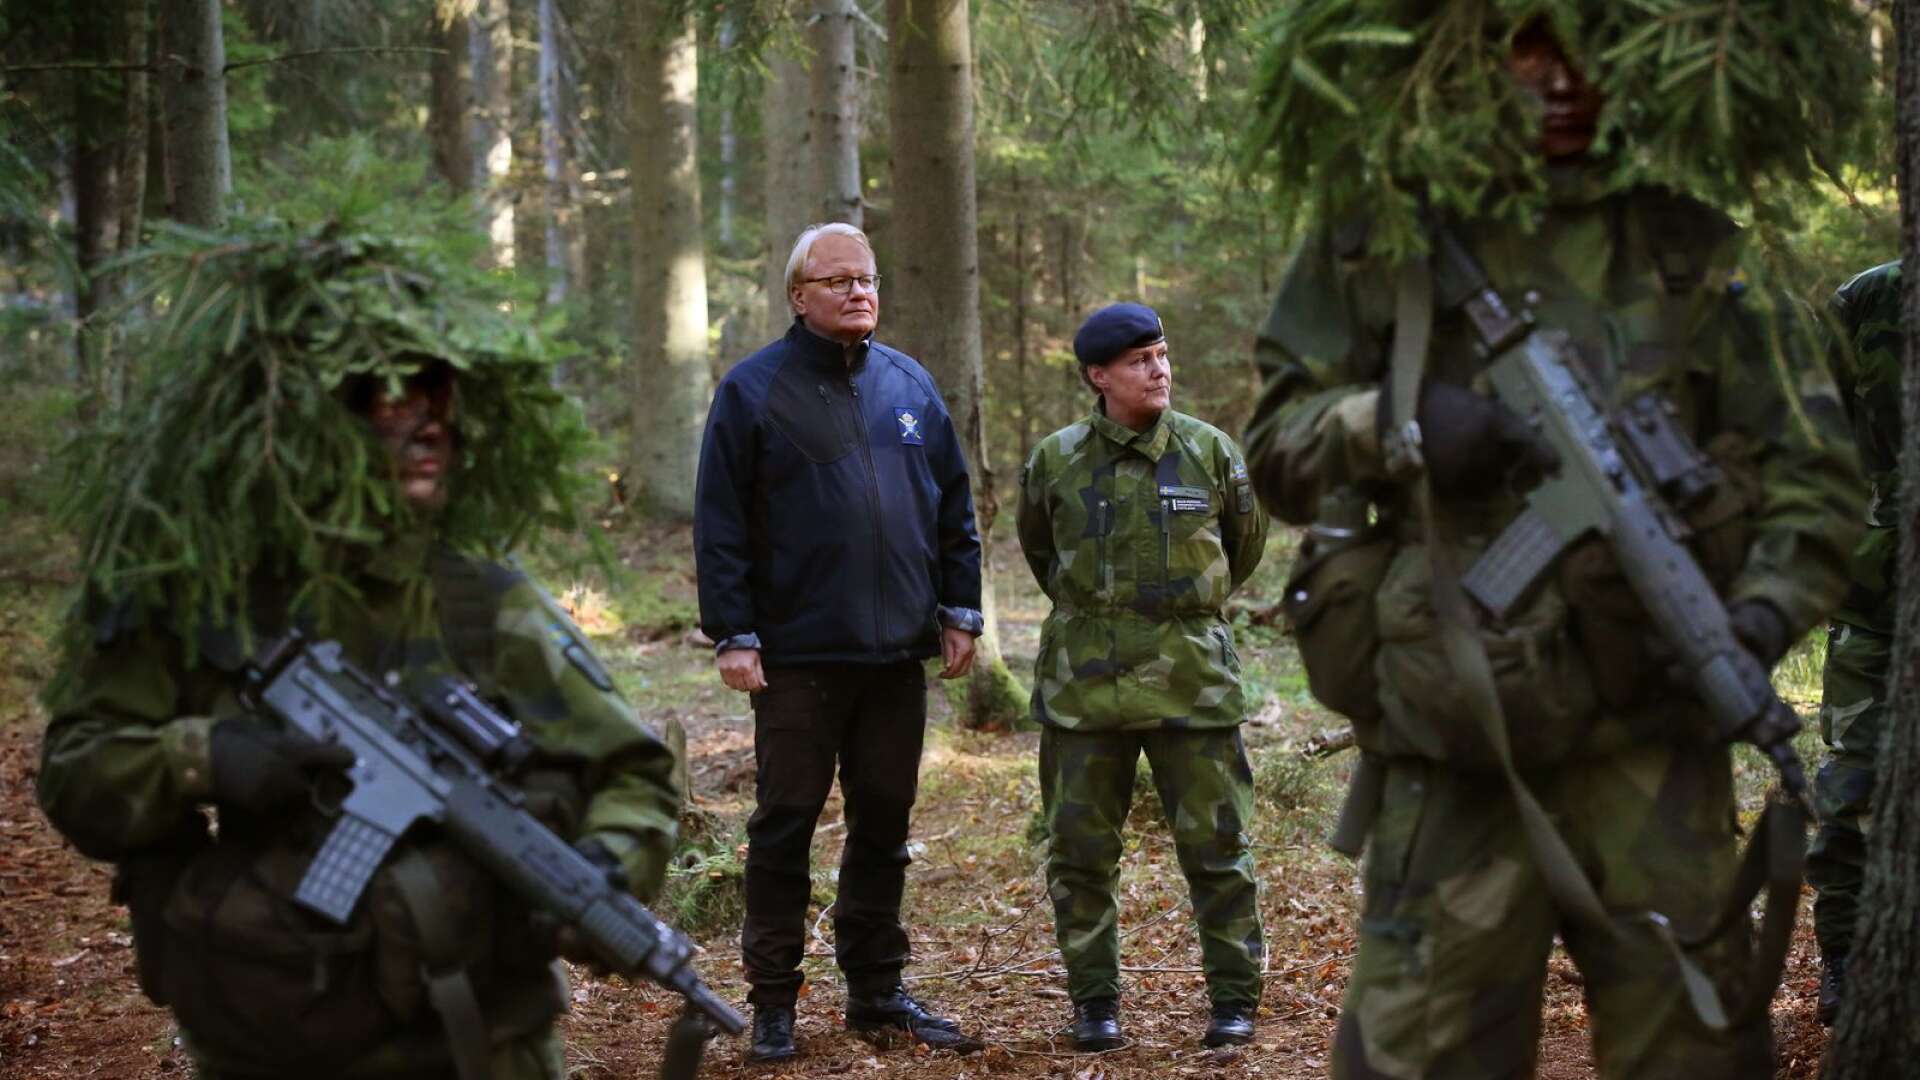 Flottiljchef Malin Persson ledsagade försvarsminister Peter Hultqvist när han besökte F7 och bland annat fick se värnpliktiga öva i fält. Senare under dagen gästade ministern också transportflyget, flygenheten och veteranflyget.